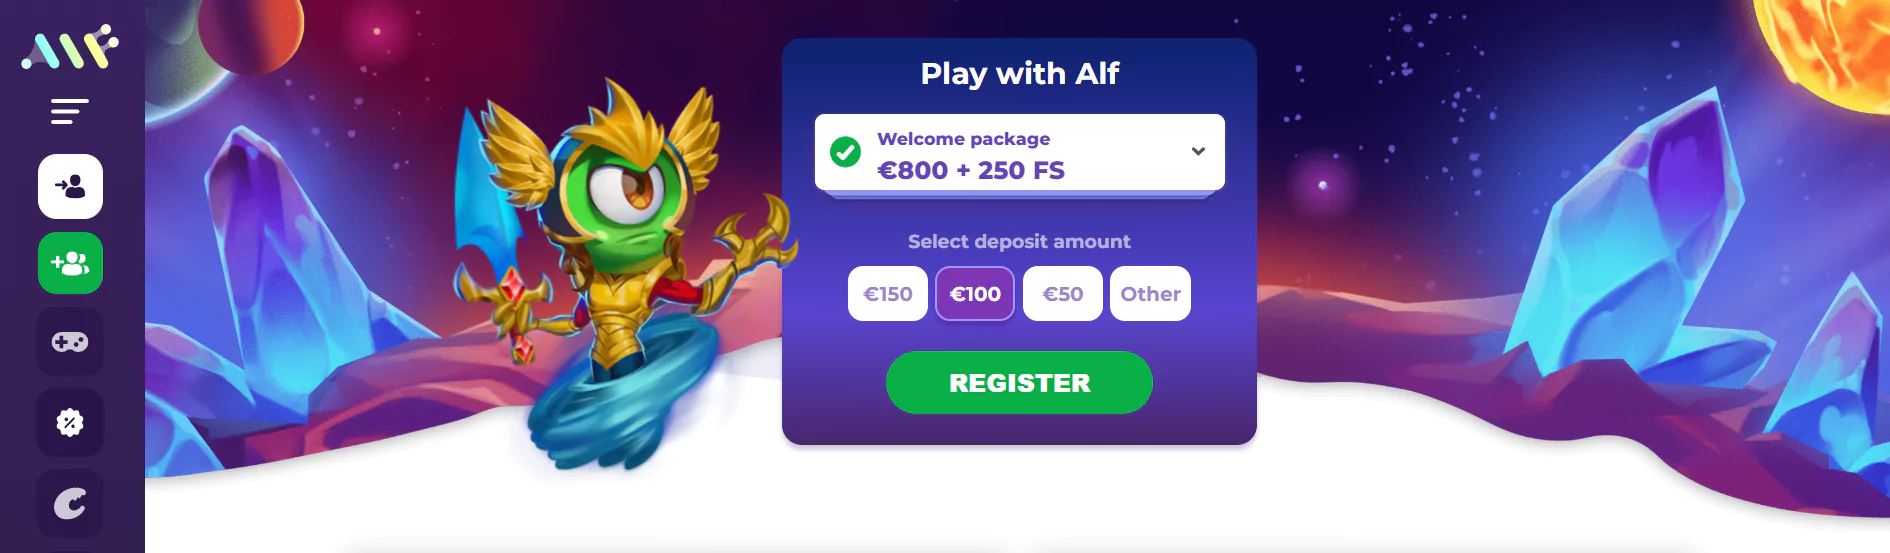 Screenshot of Online Casino with Bitcoin Deposit Methods - Alf Casino